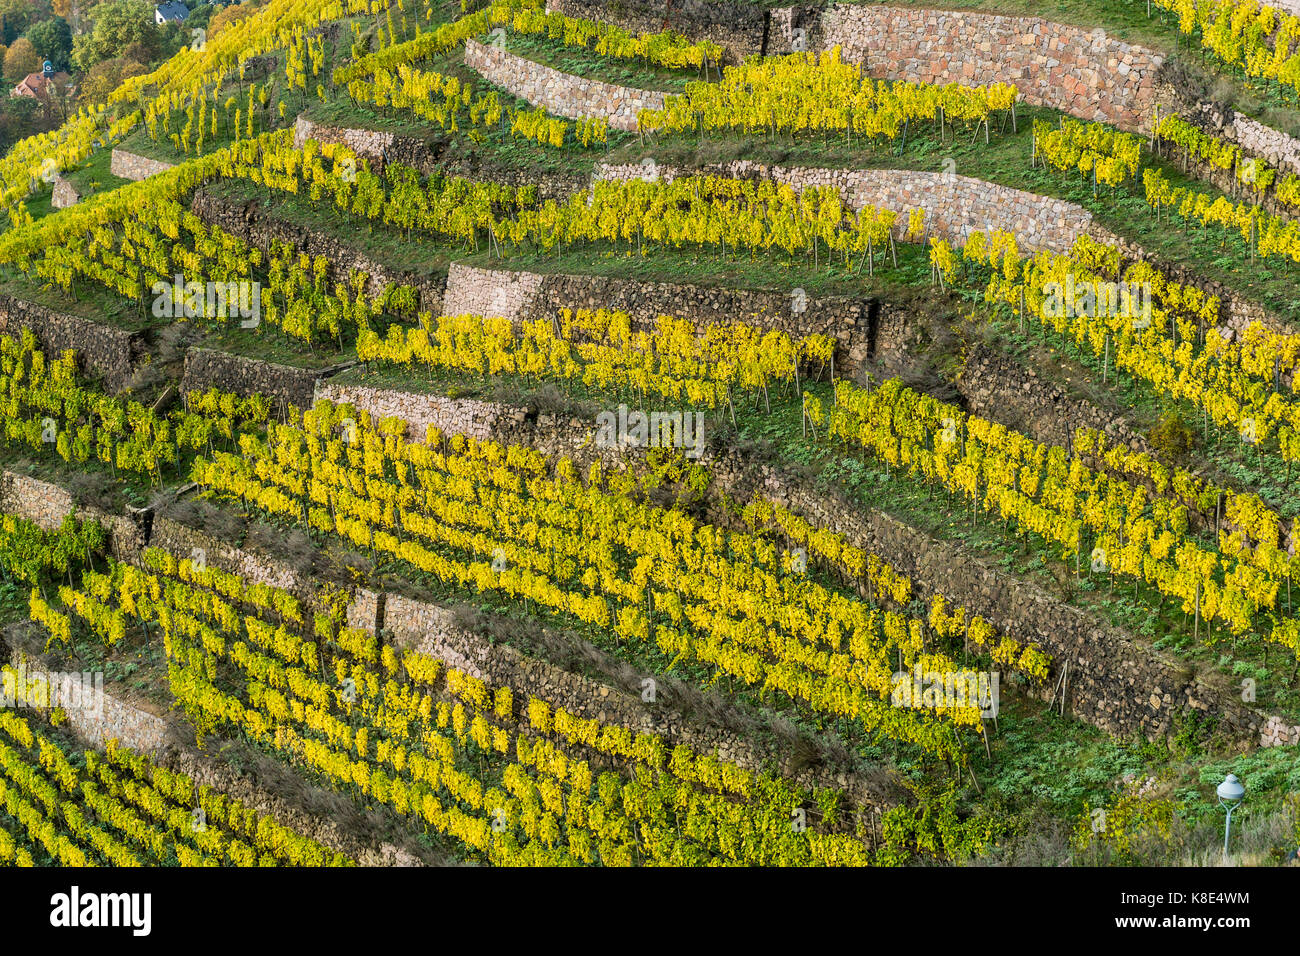 Mei?ner Elbland, vineyard terraces in Radebeul, Meissner Elbland, Weinbergterrassen in Radebeul Stock Photo